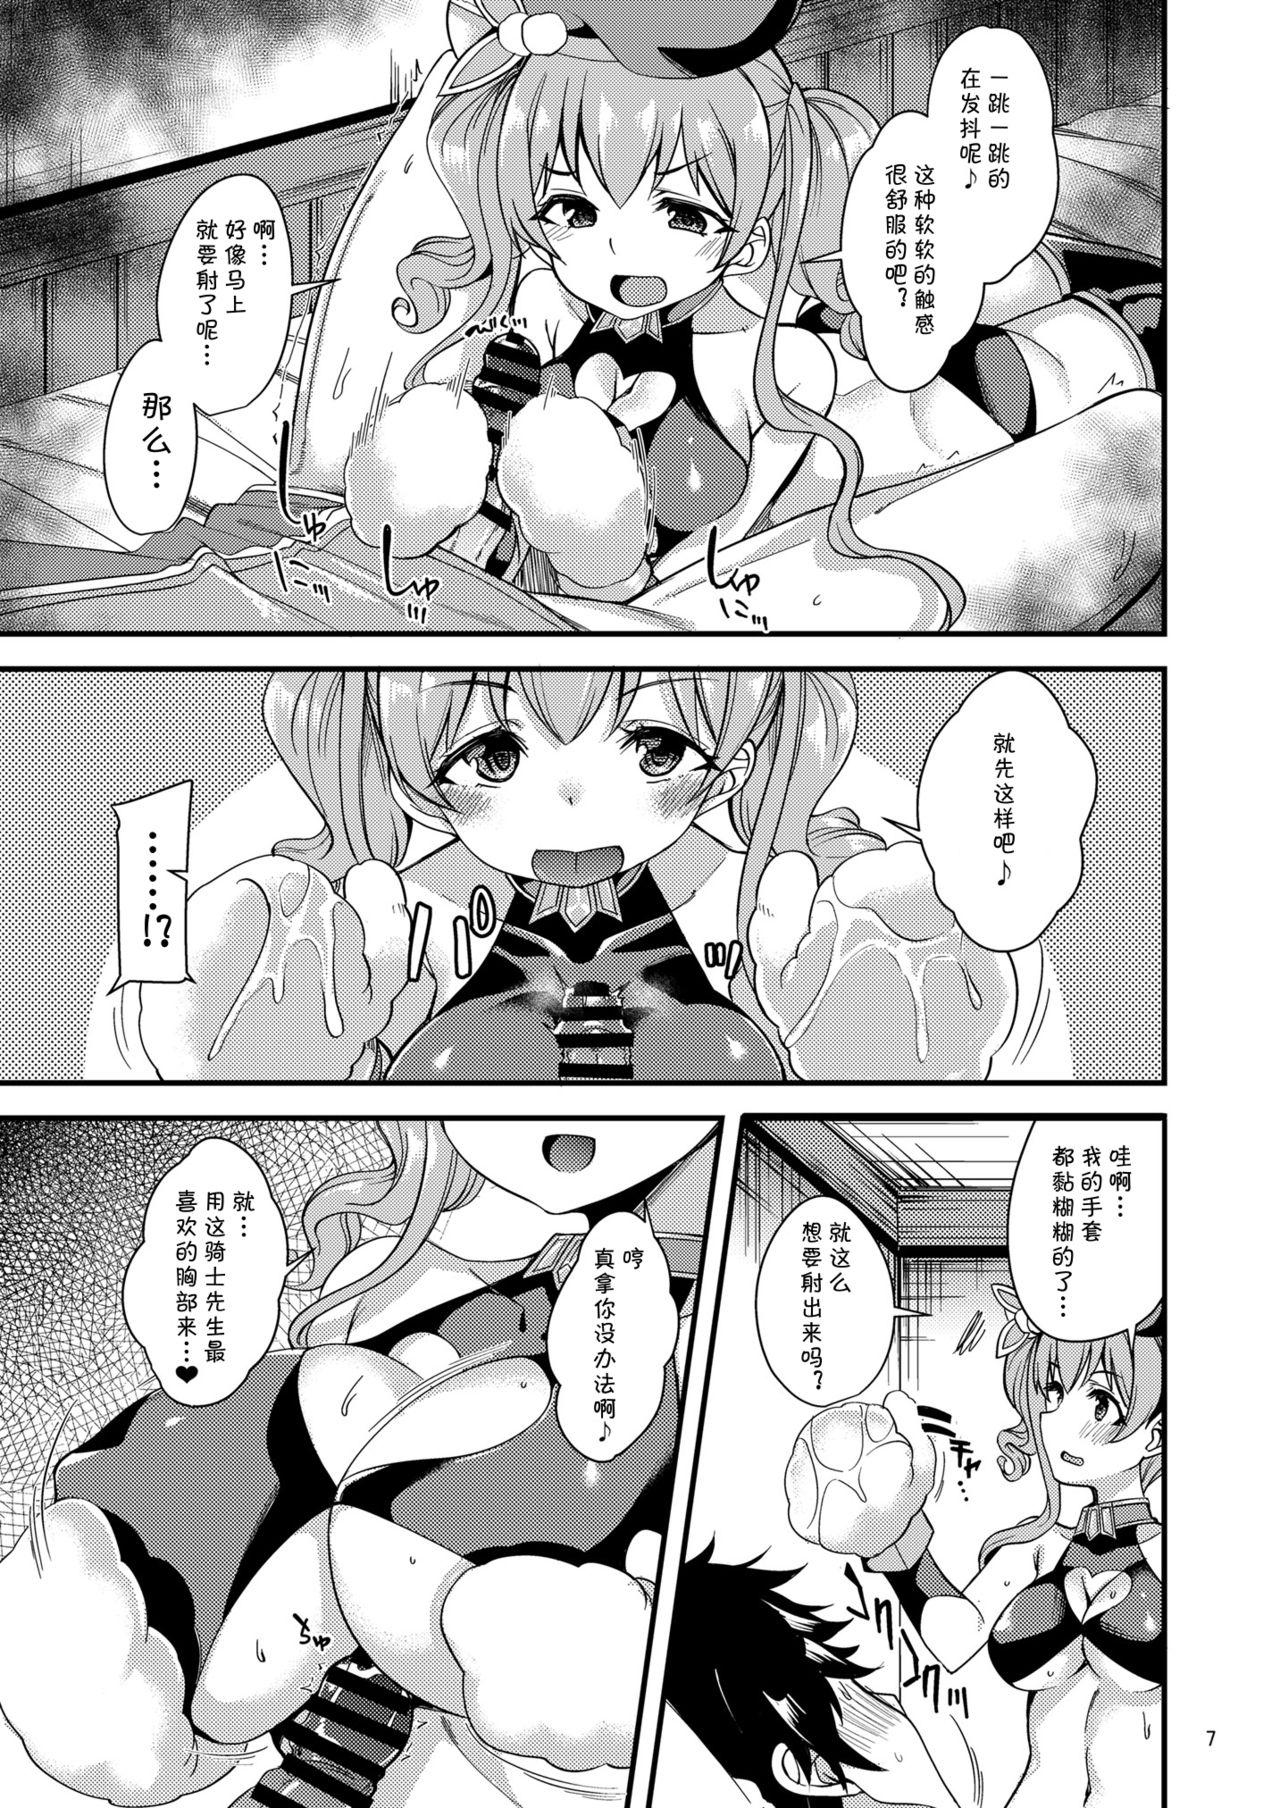 Carro Tsumugi Make Heroine Move!! 04 - Princess connect Tit - Page 8